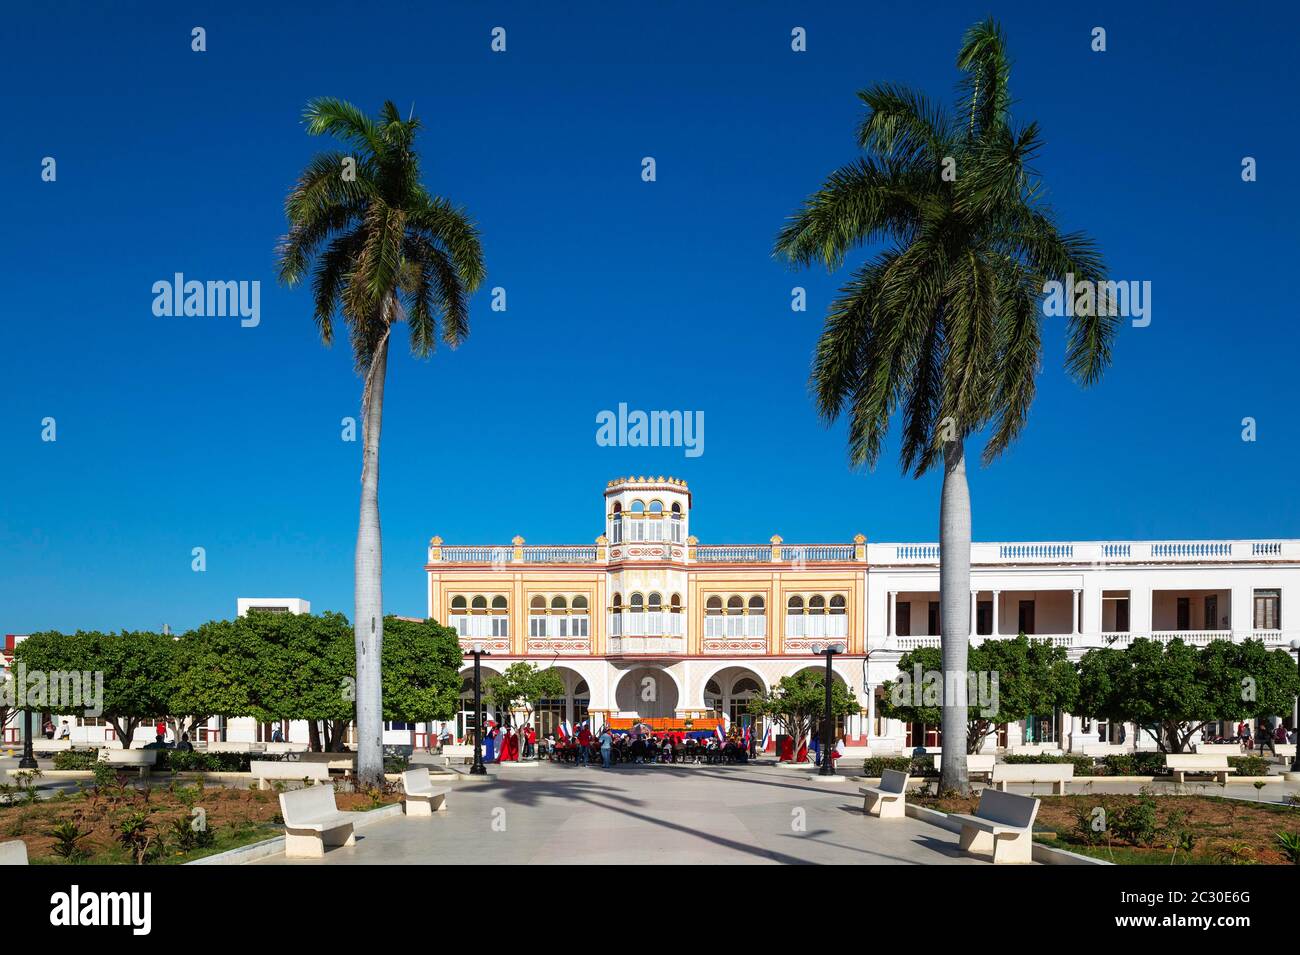 Maurische Architektur des Rathauses im Parque Cespedes, davor ist eine Veranstaltung gerade in Vorbereitung, Manzanillo, Kuba Stockfoto